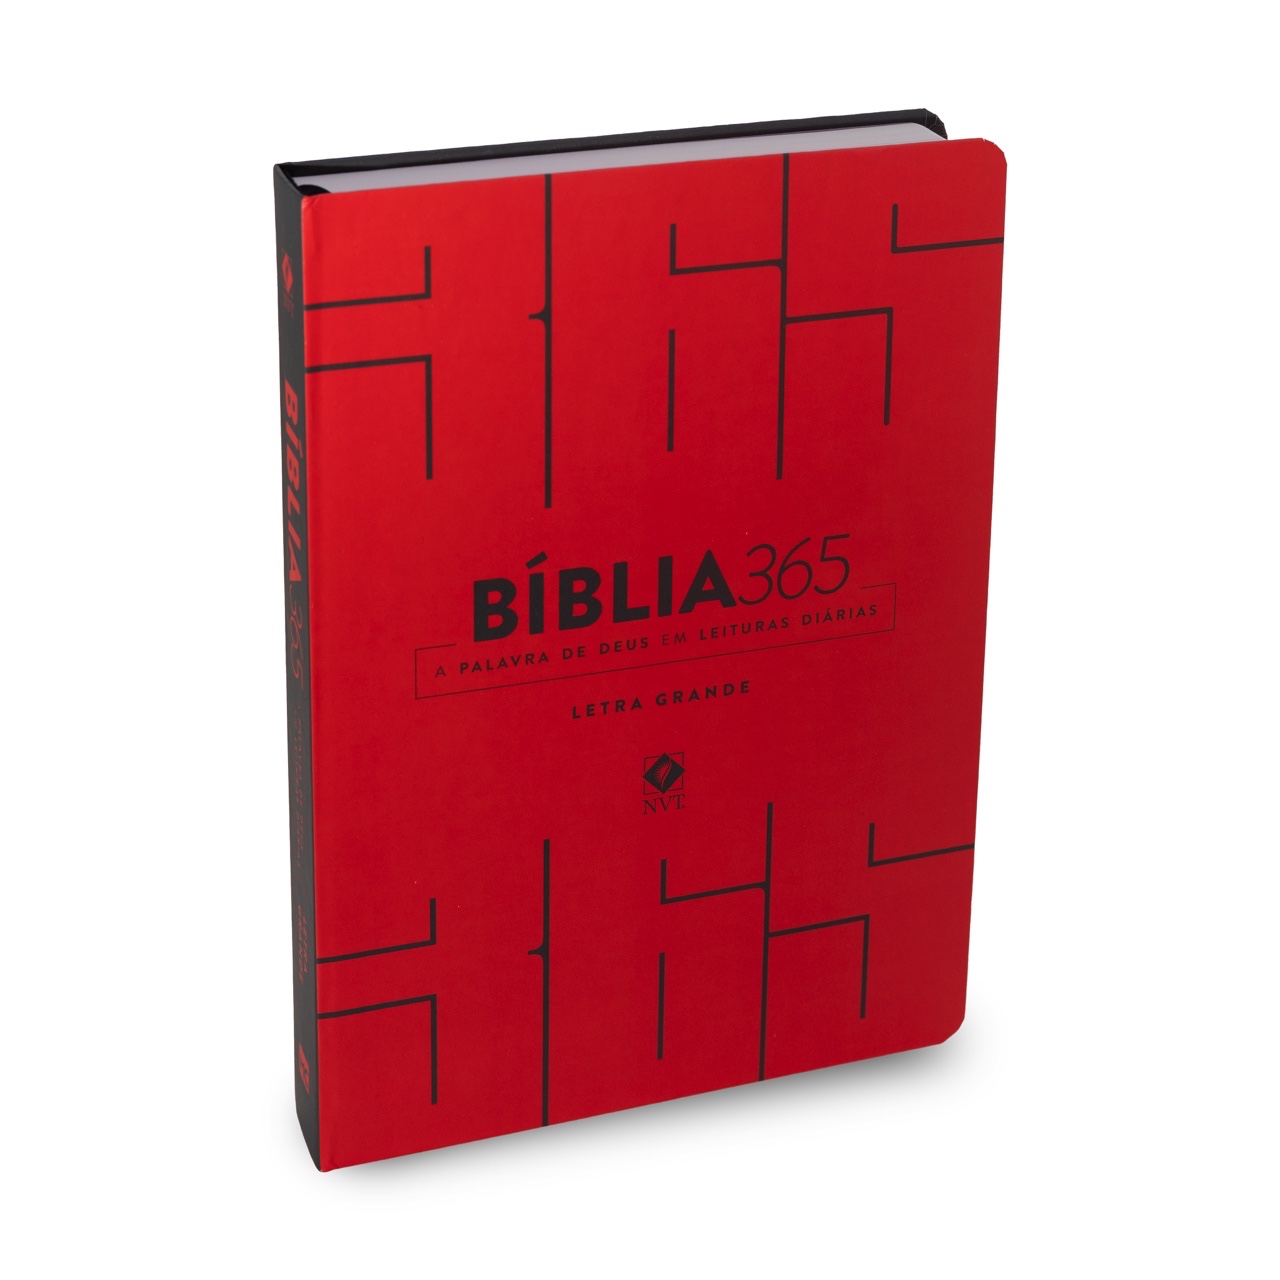 Bíblia 365 NVT - Capa Vermelha - LETRA GRANDE